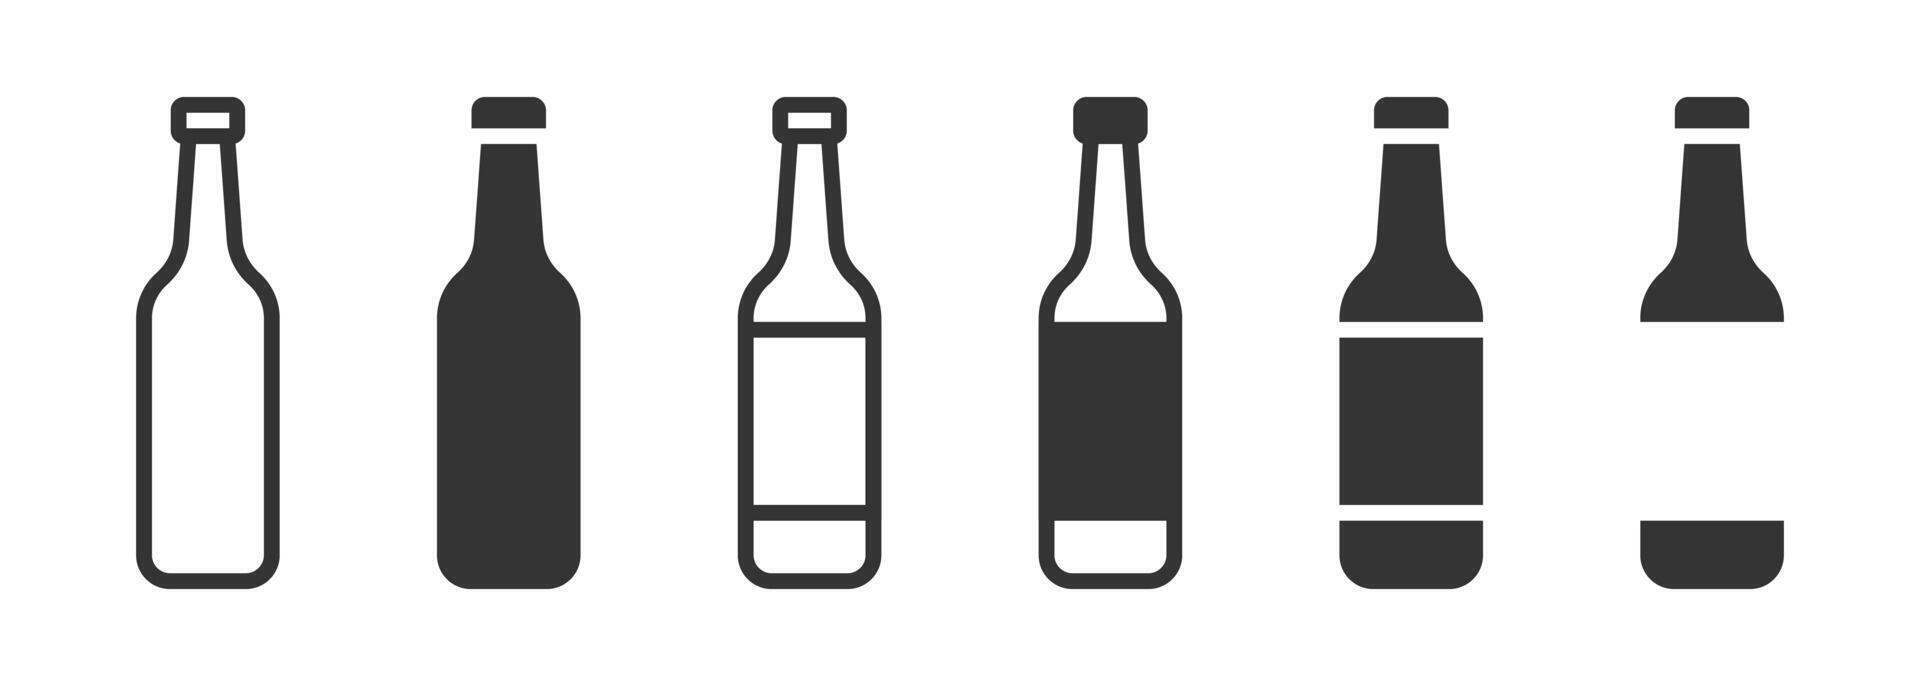 öl flaska ikon uppsättning. vektor illustration.